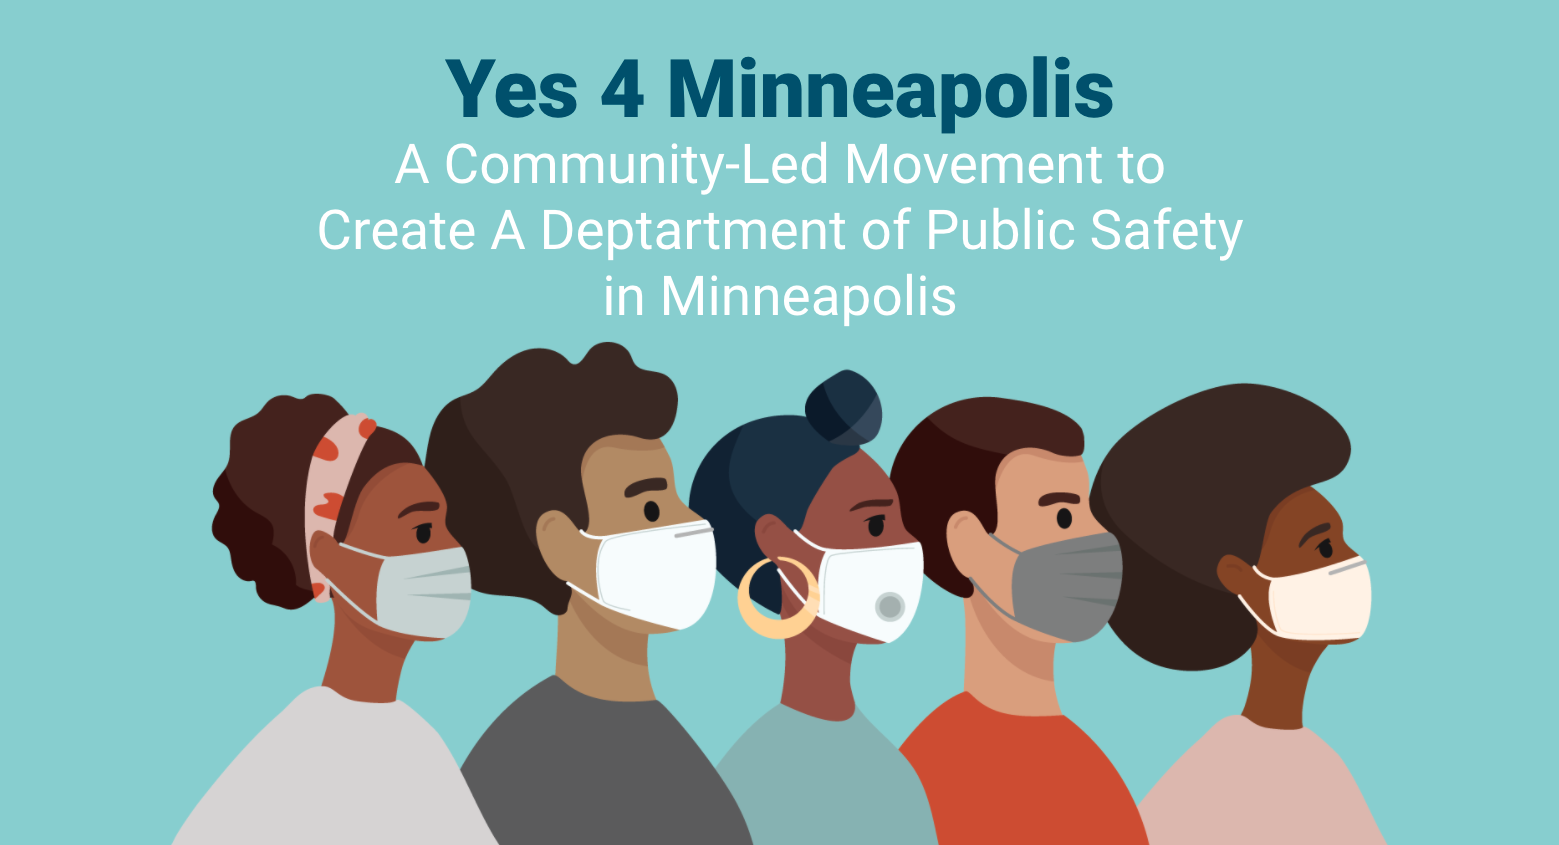 36 Minneapolis Small Businesses Endorse #Yes4Minneapolis